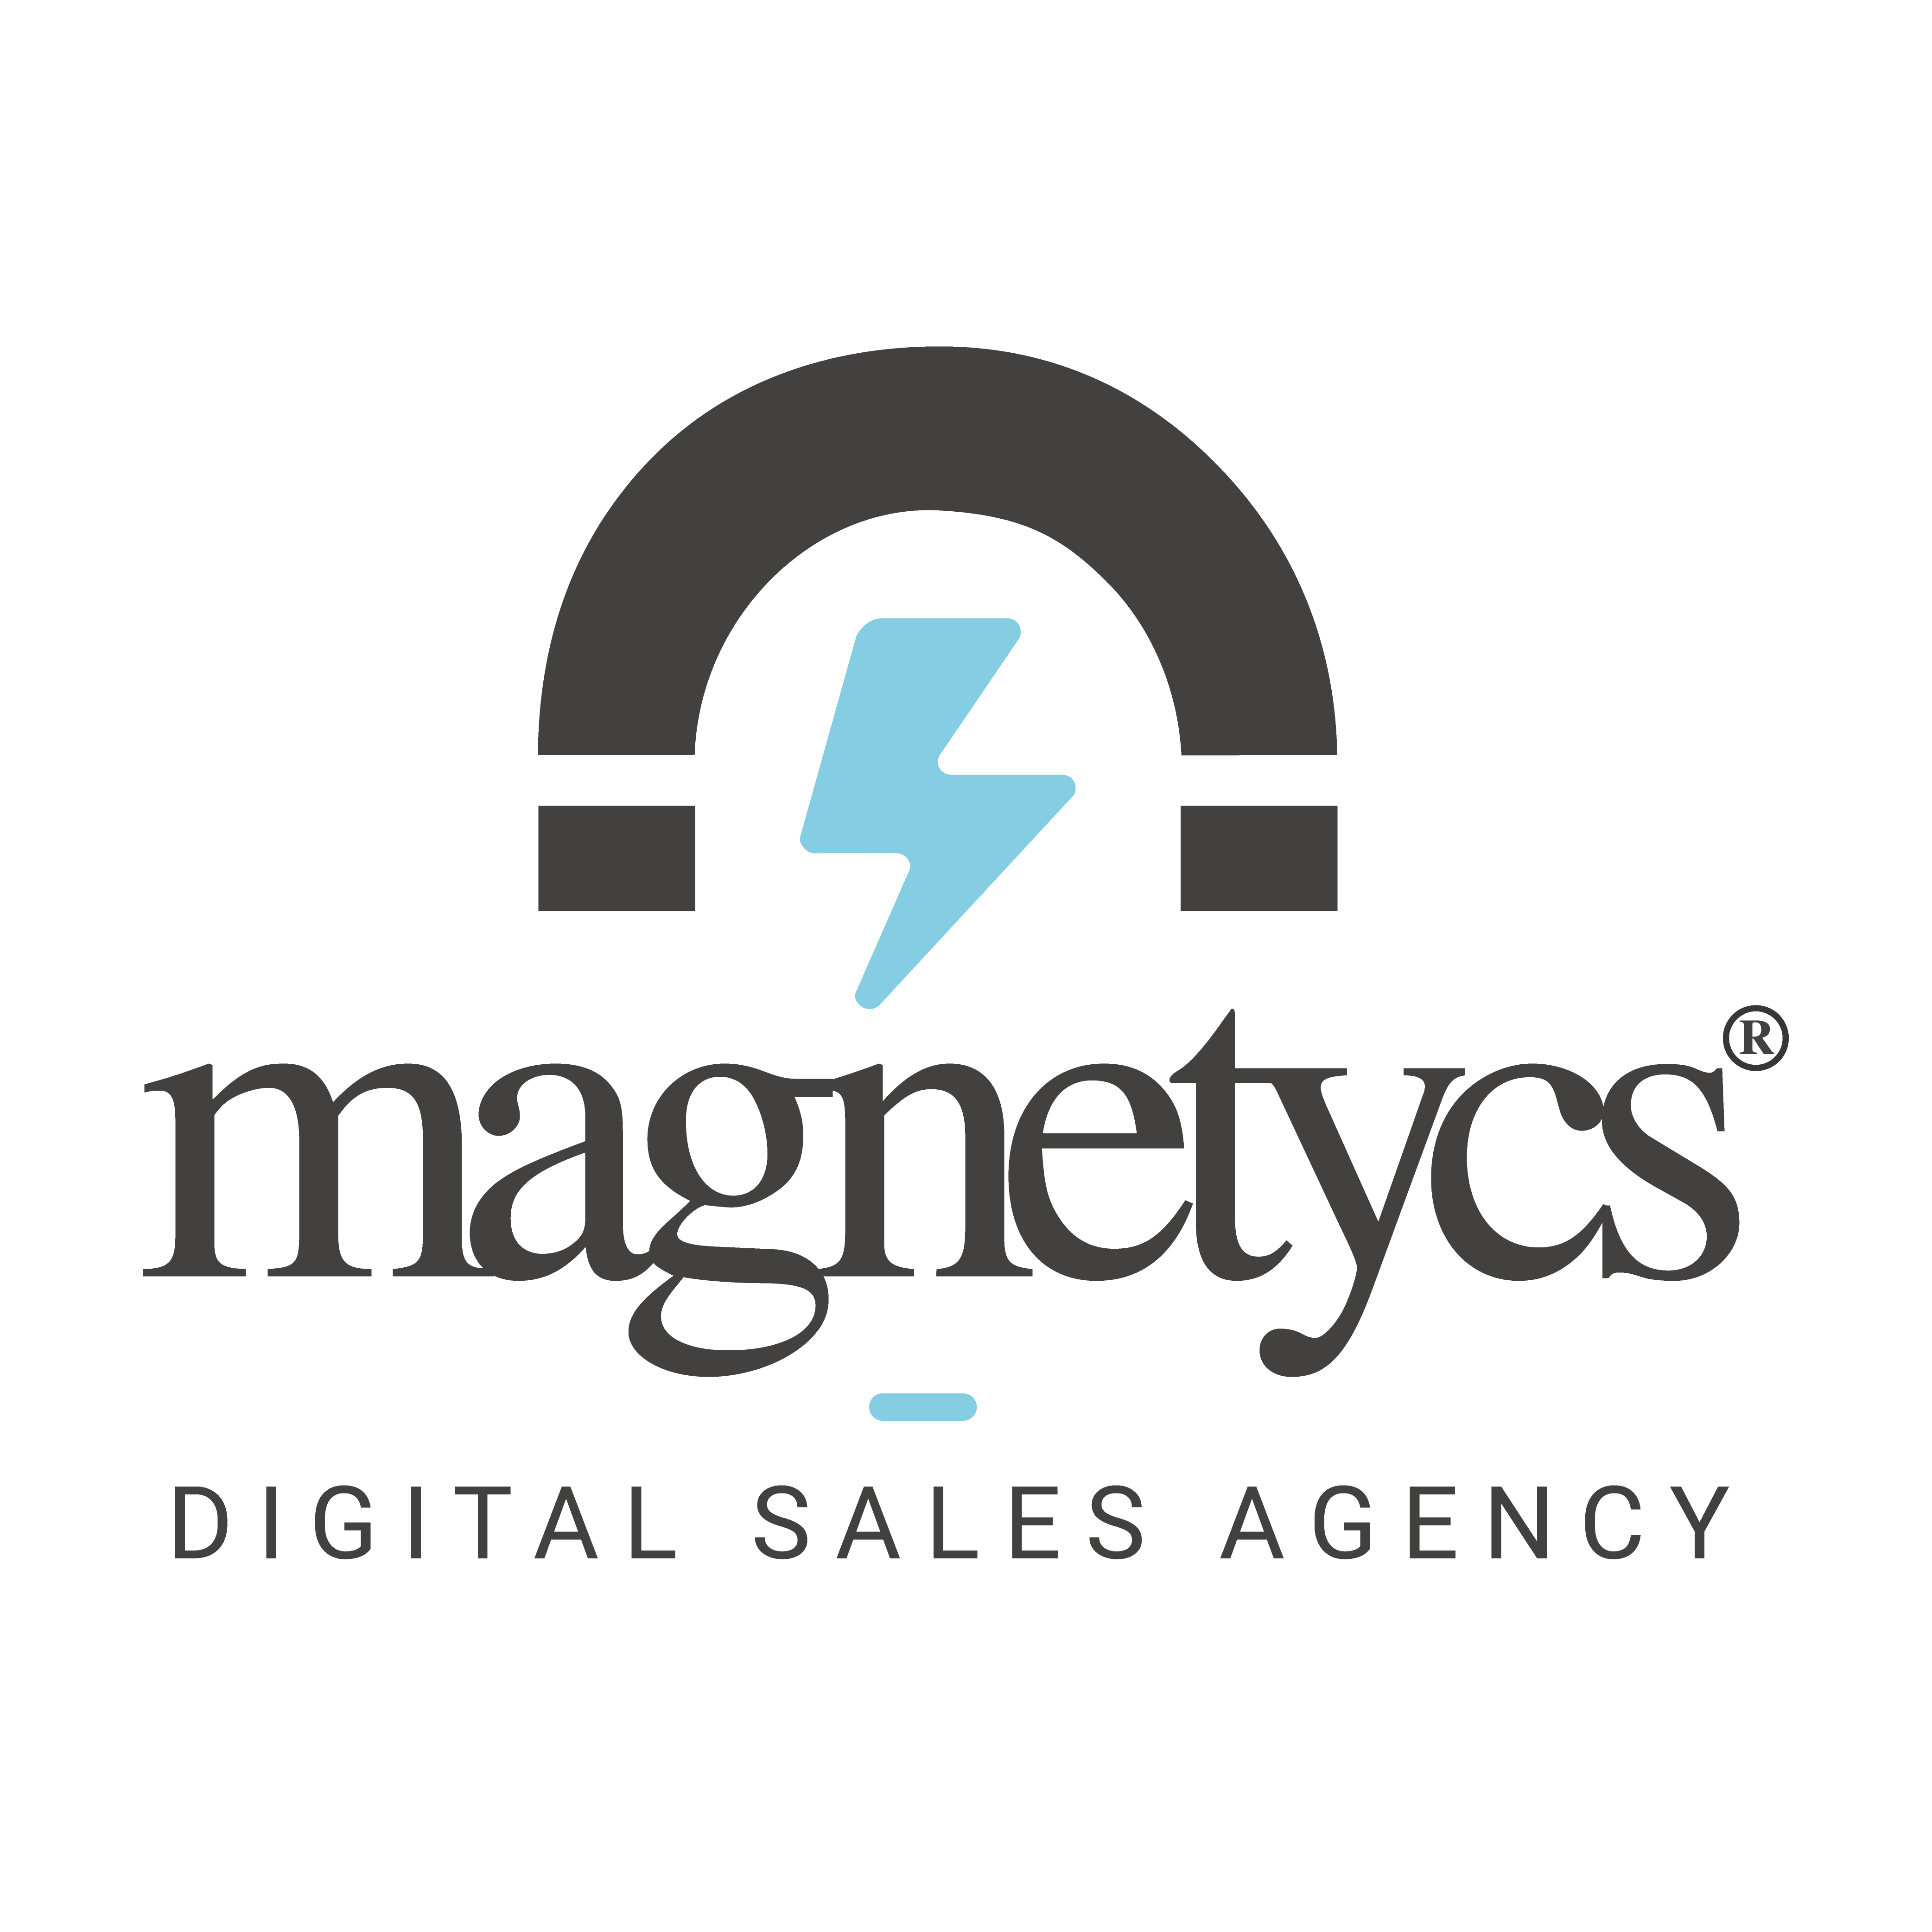 Magnetycs Digital Sales Agency